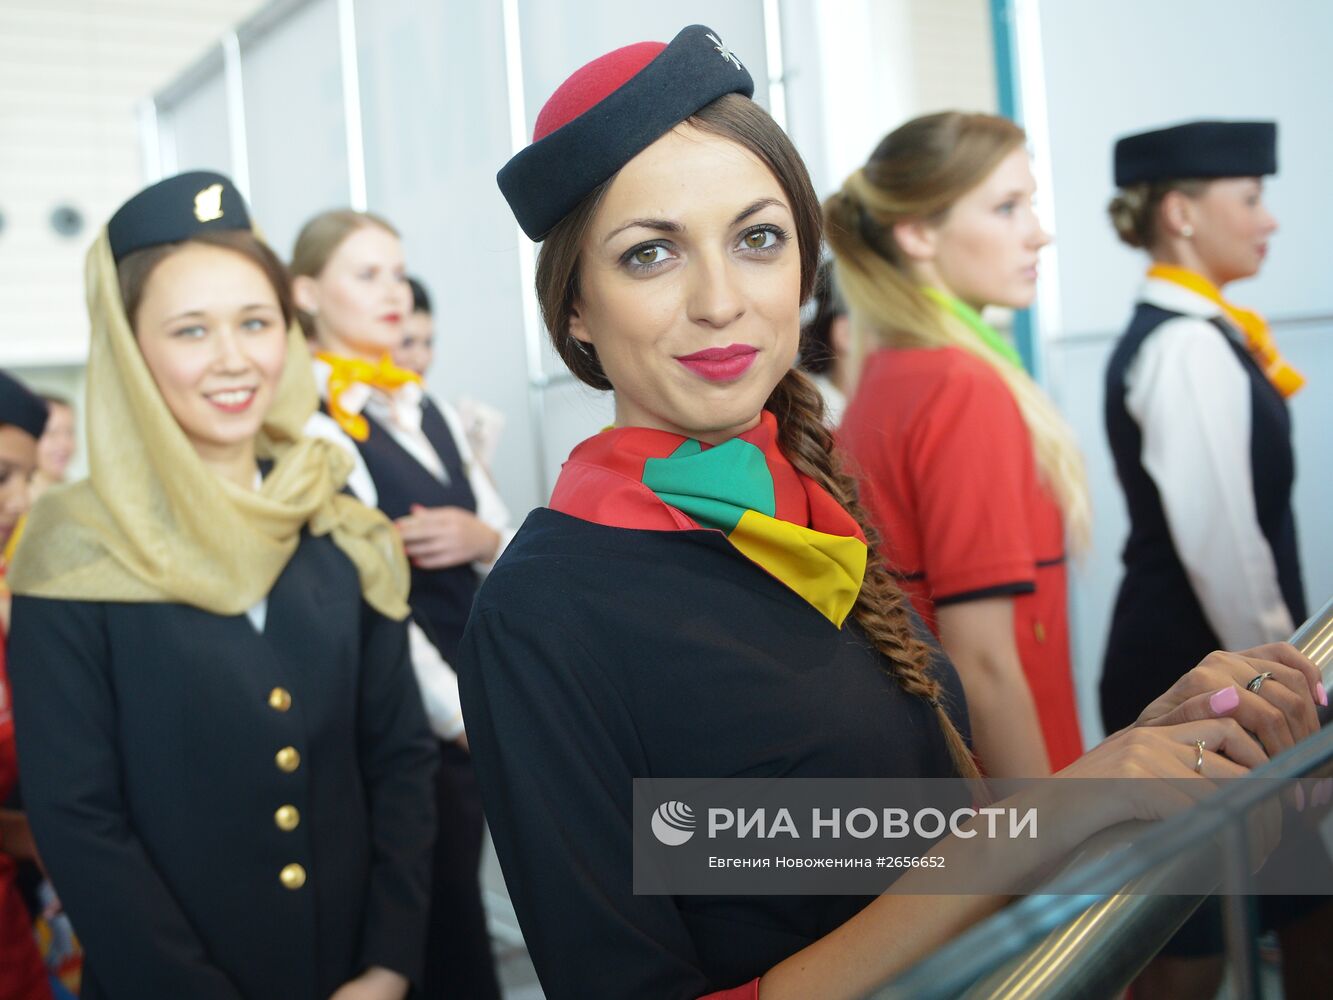 Показ униформы бортпроводников DME Runway в аэропорту Домодедово